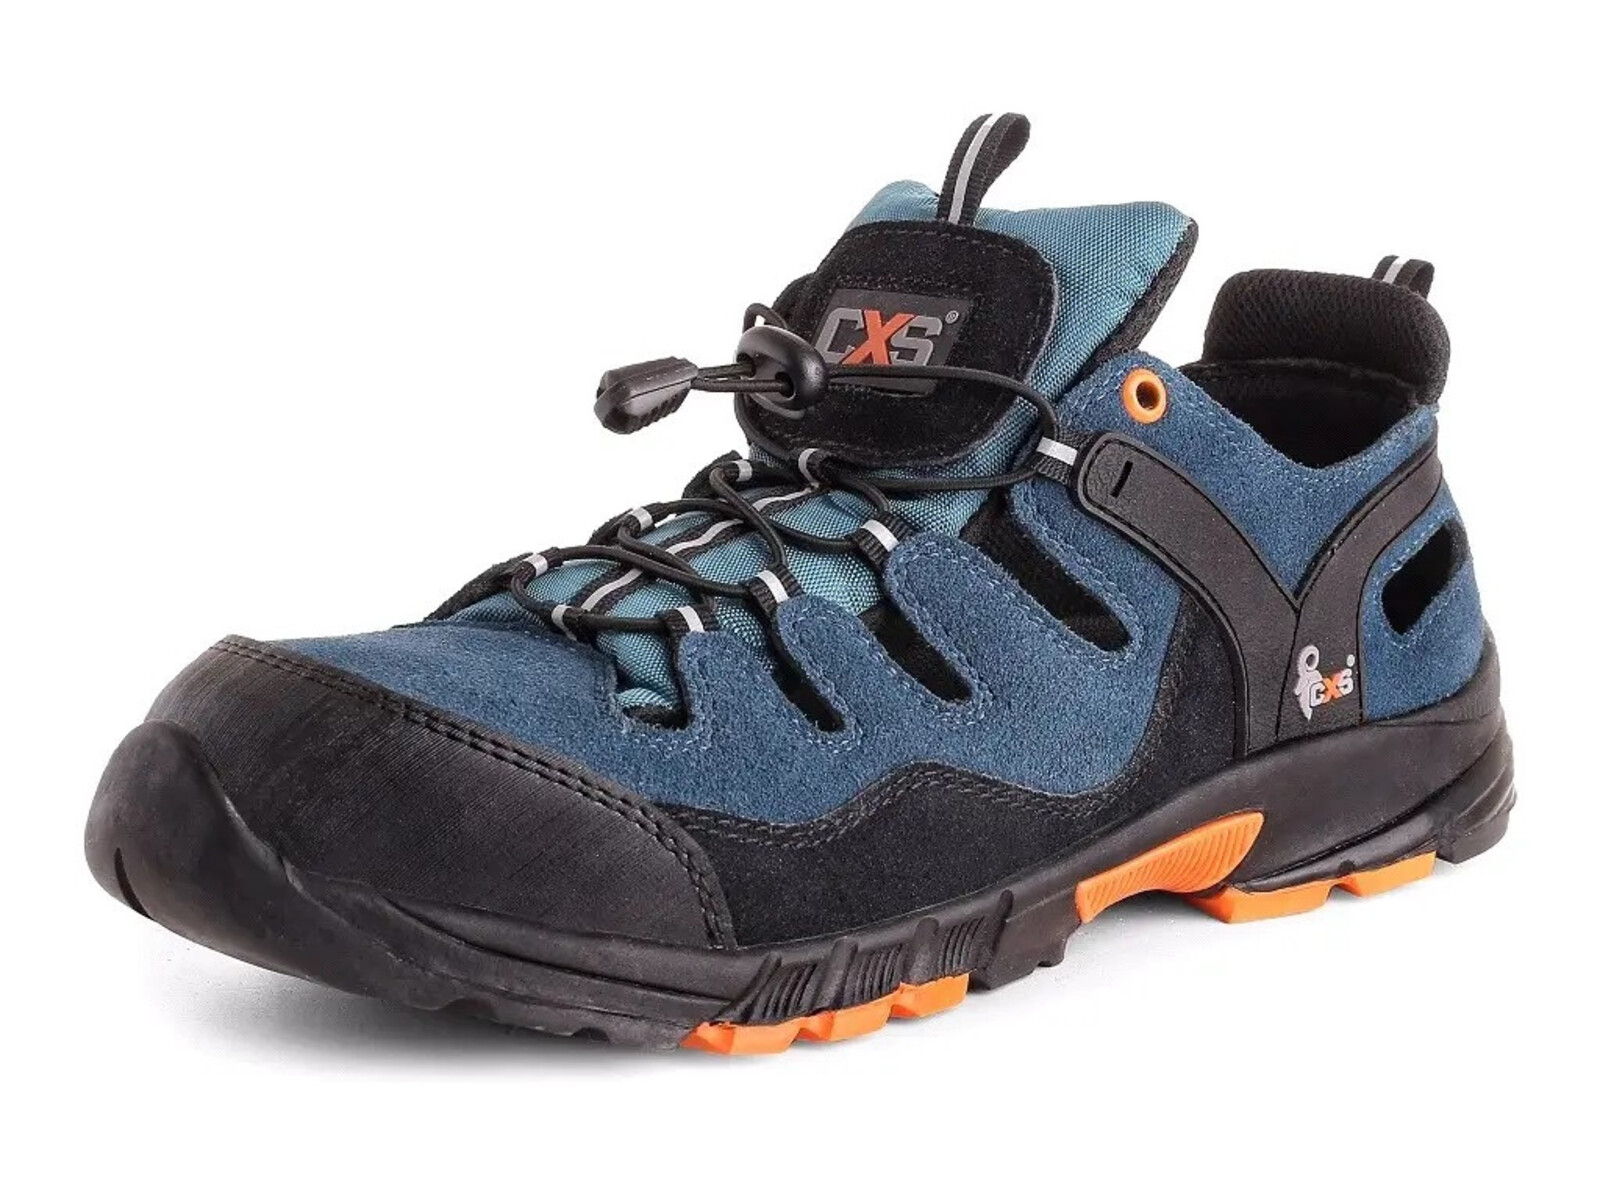 Bezpečnostné sandále CXS Land Cabrera S1 SRC - veľkosť: 48, farba: modrá/oranžová